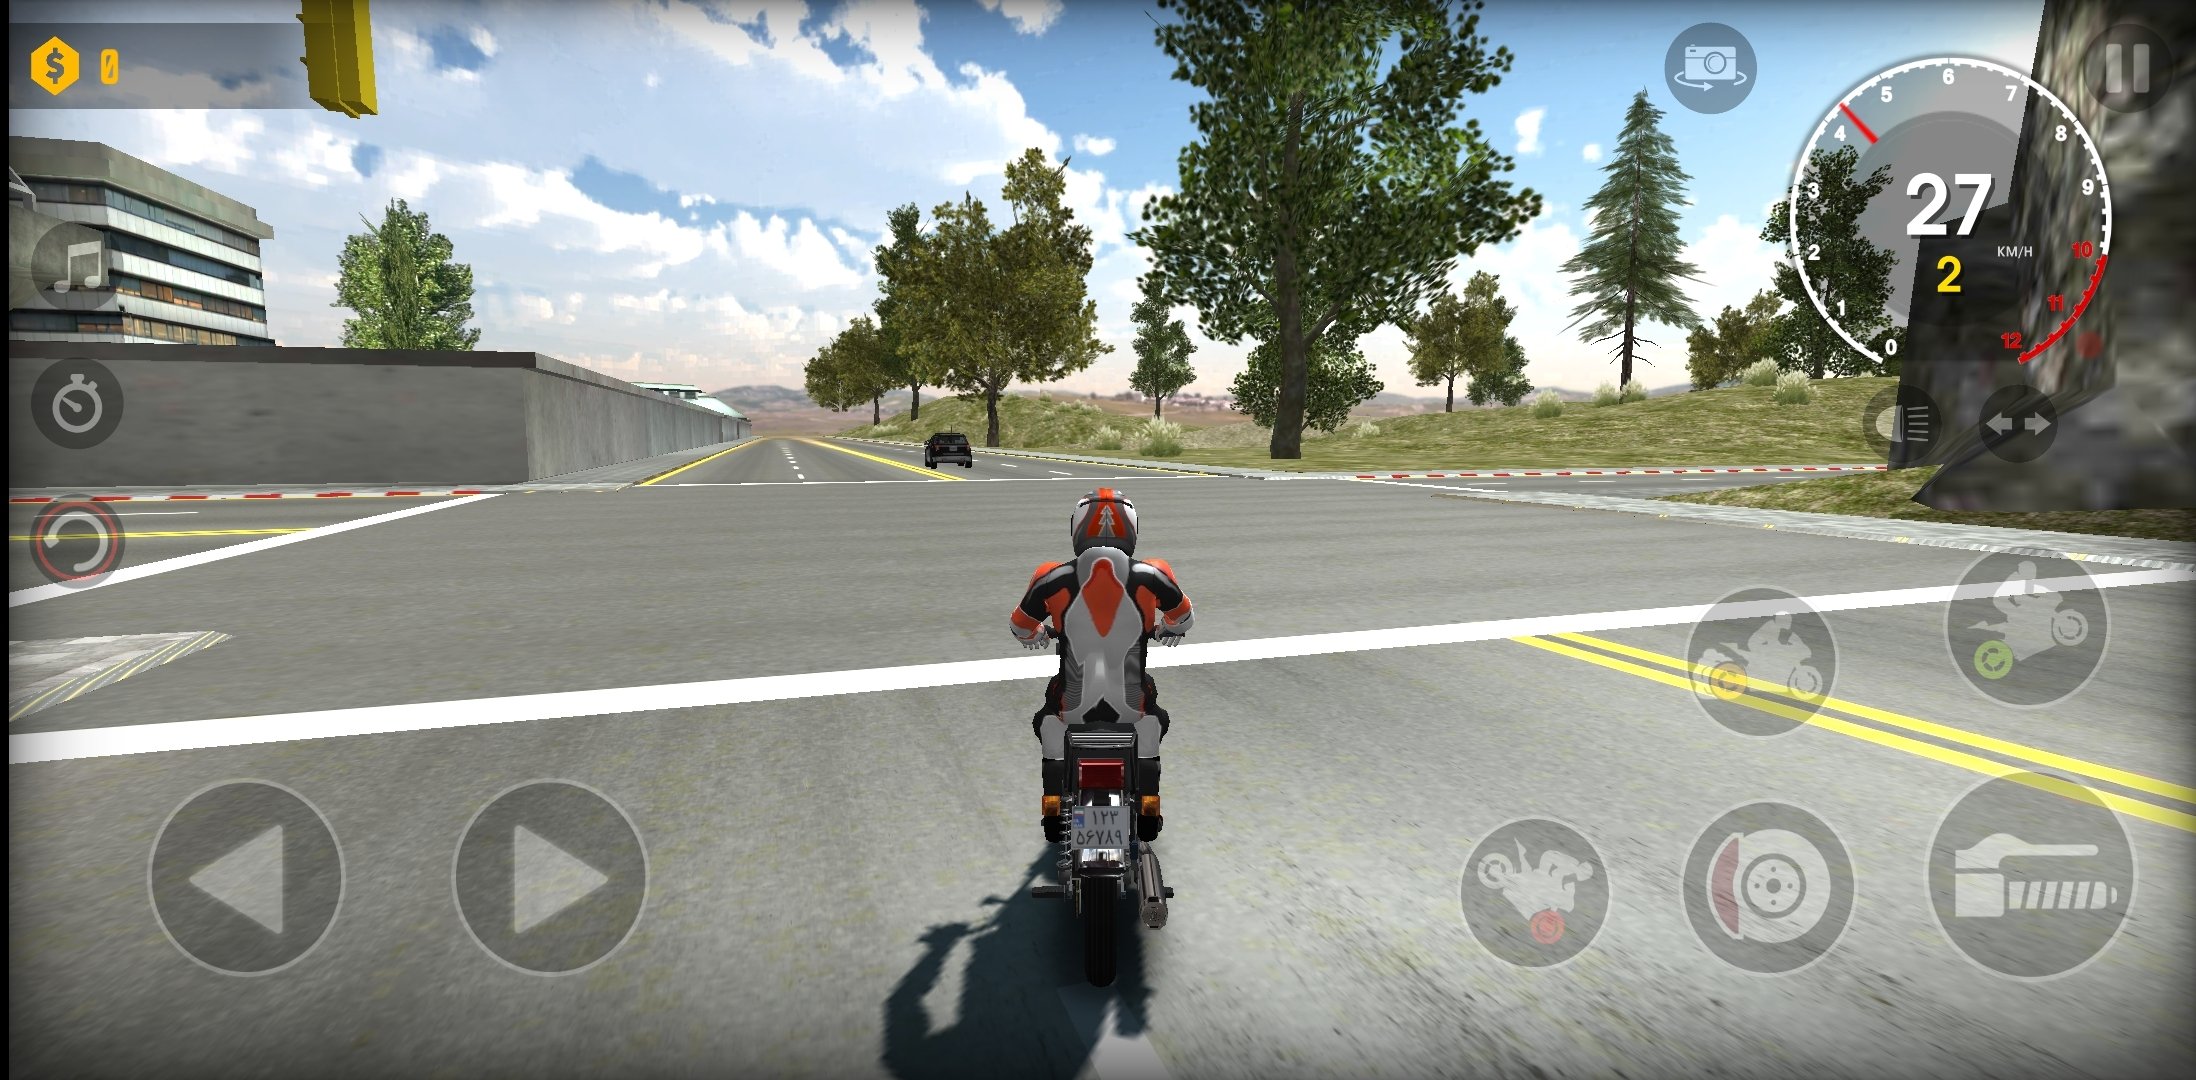 Xtreme Motorbikes em Jogos na Internet